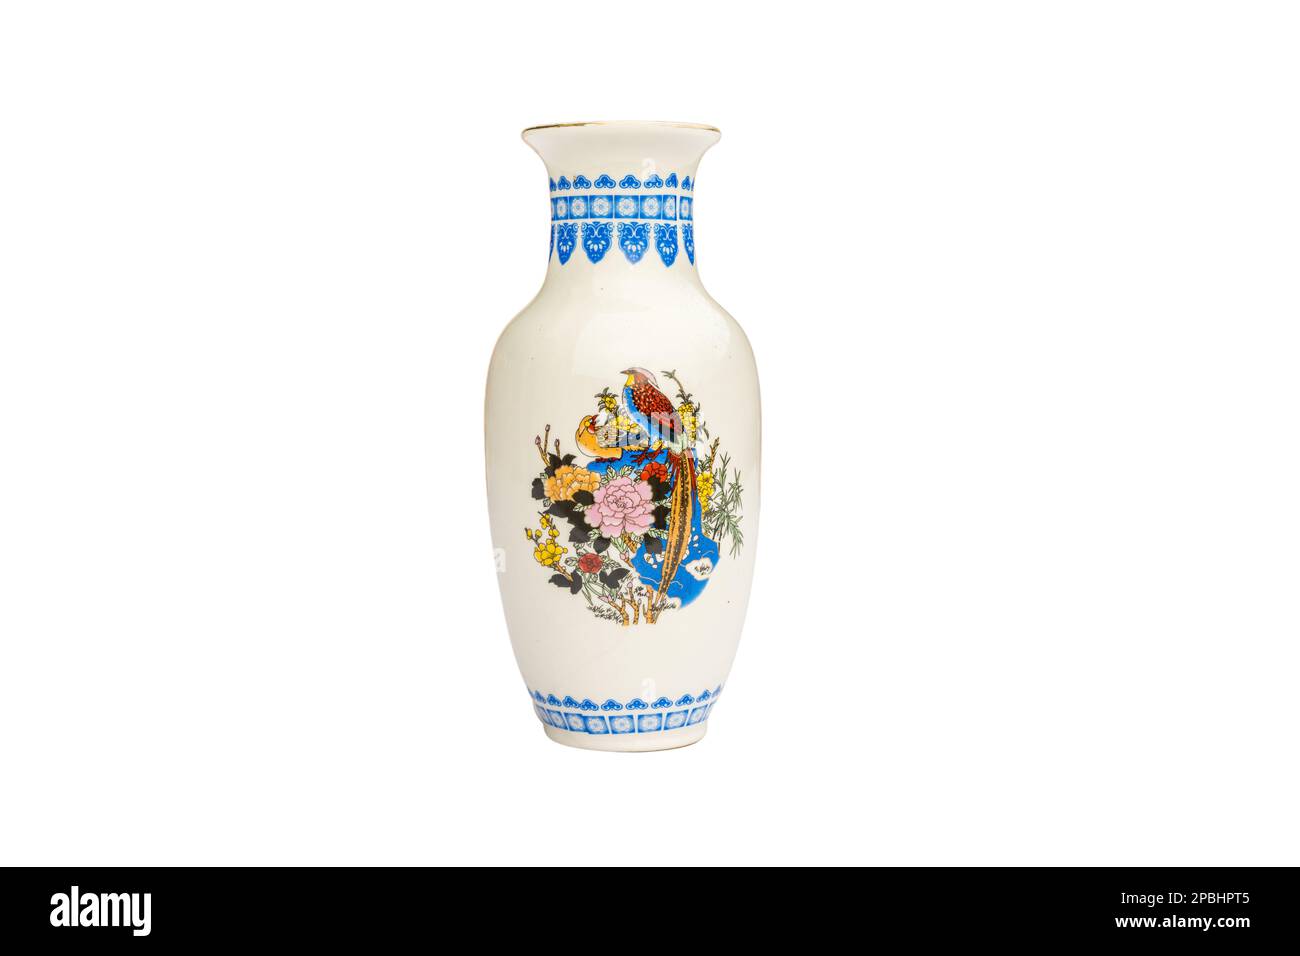 Pottery flower vase isolated on white background Stock Photo